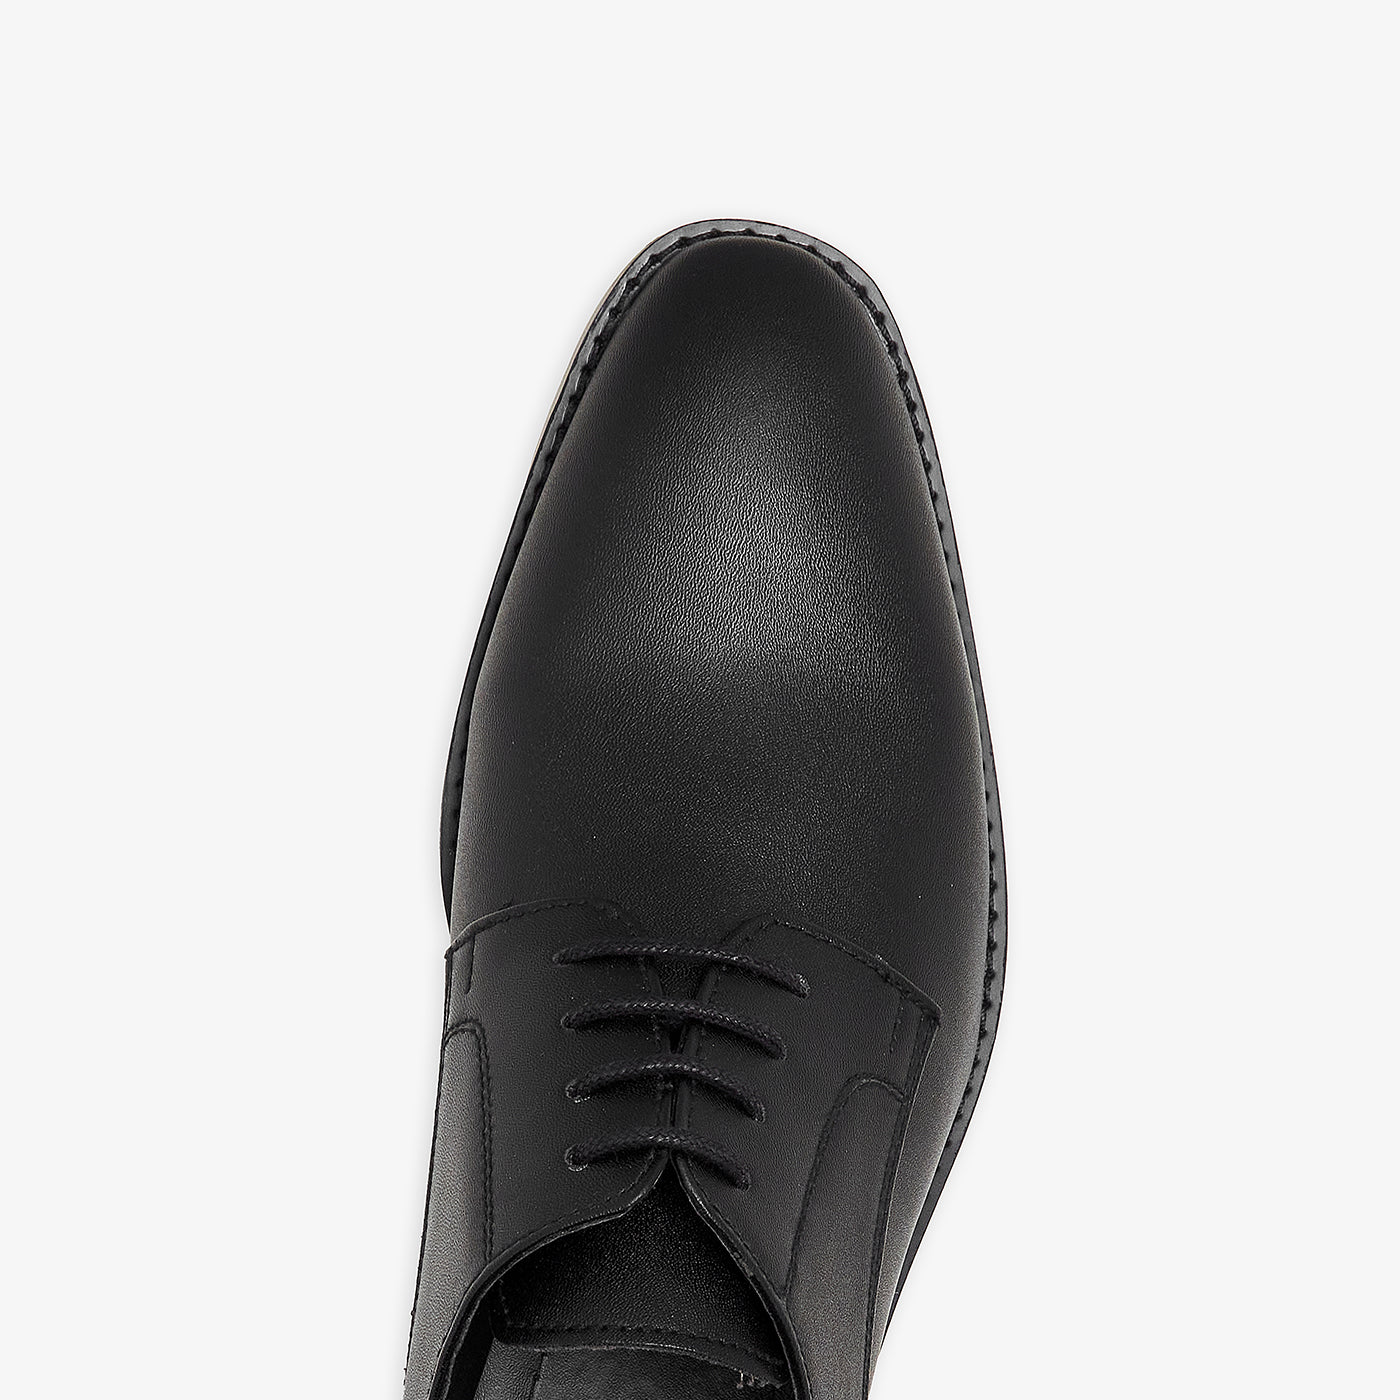 Buy Men Formal Shoes -Men's Sophisticated Formal Shoes M-BF-BLB-0004 ...